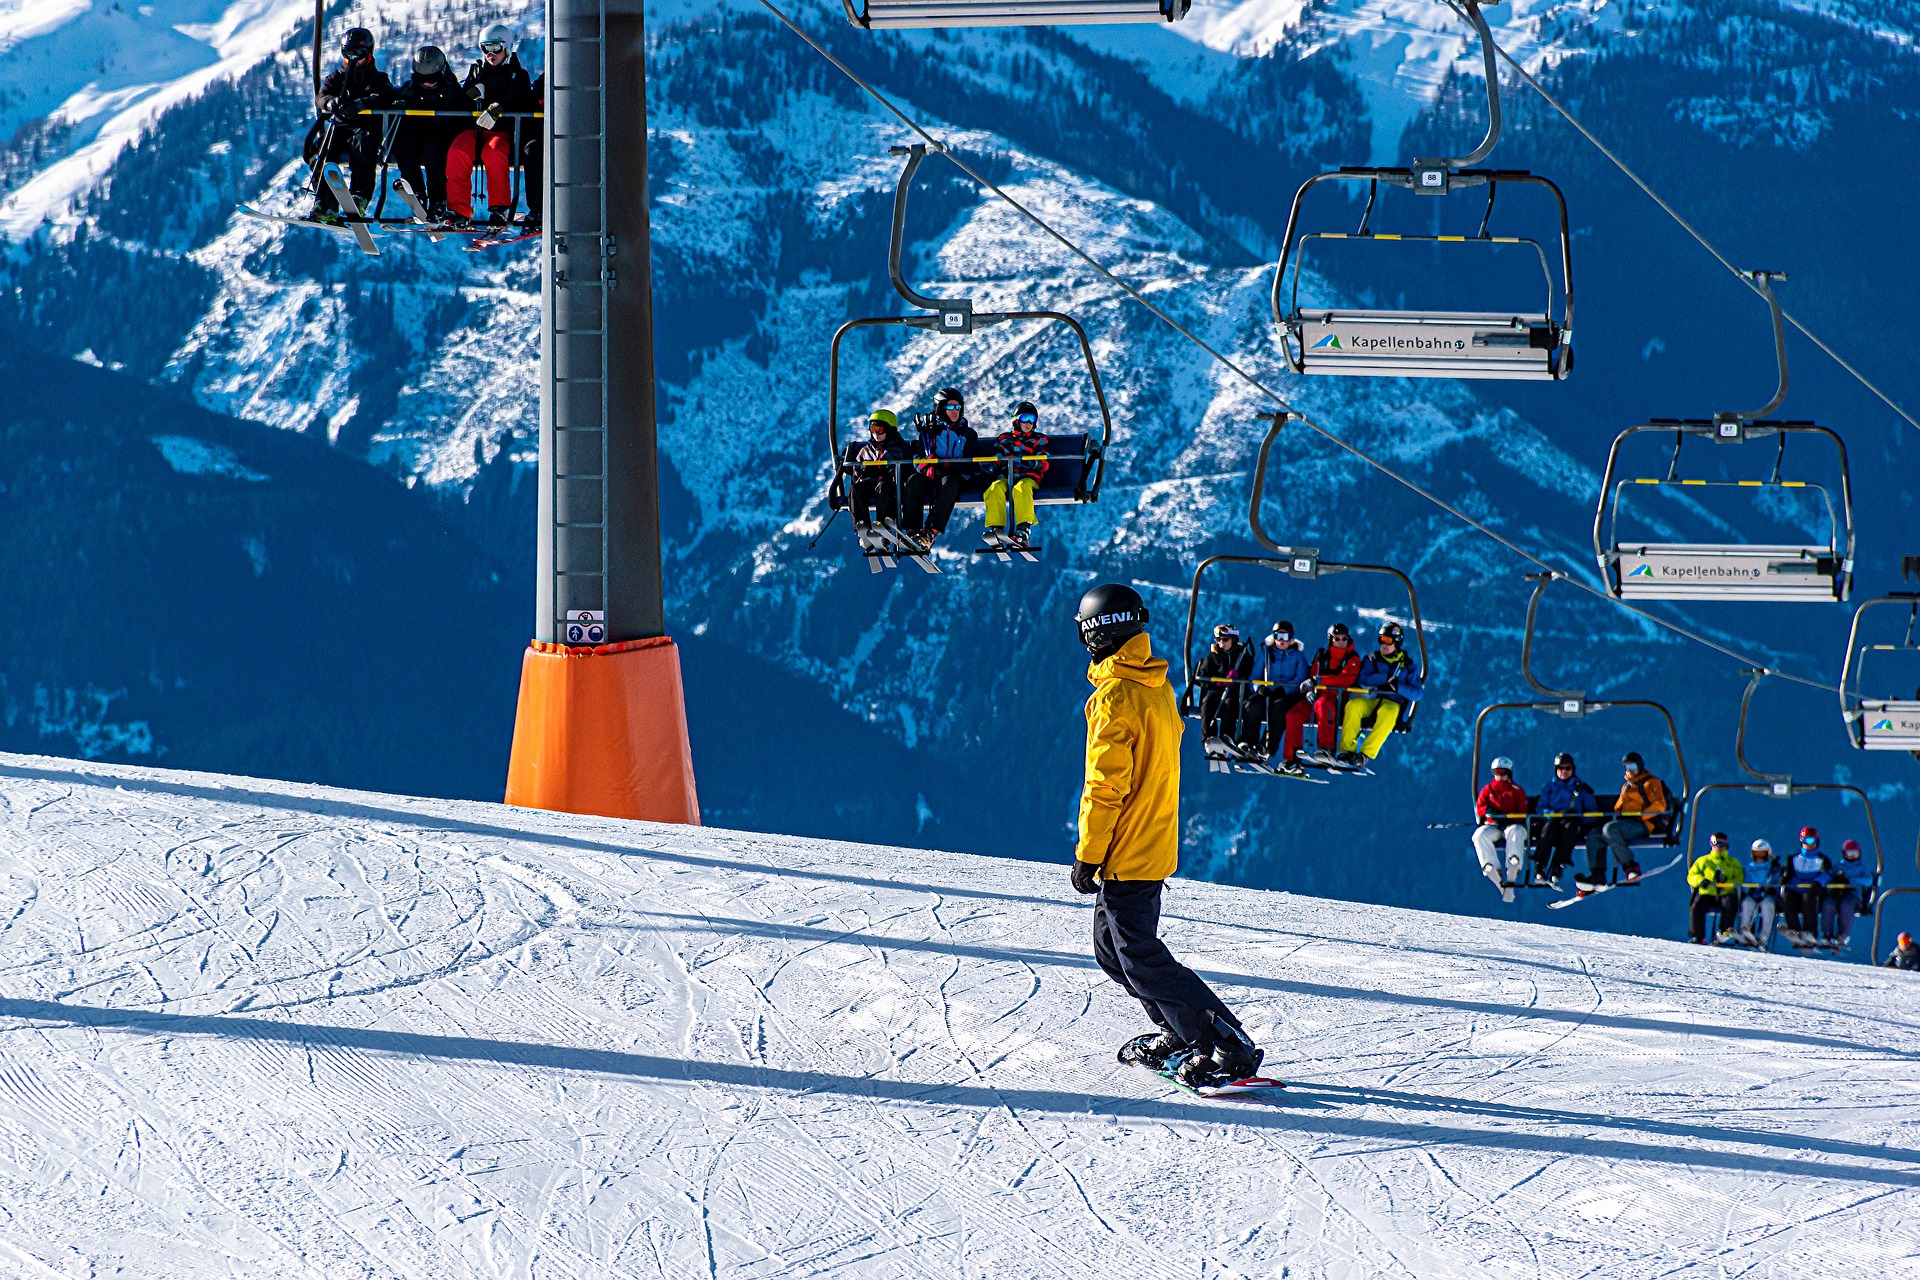 Zimowy raj dla narciarzy – najlepsze stoki narciarskie w Polsce